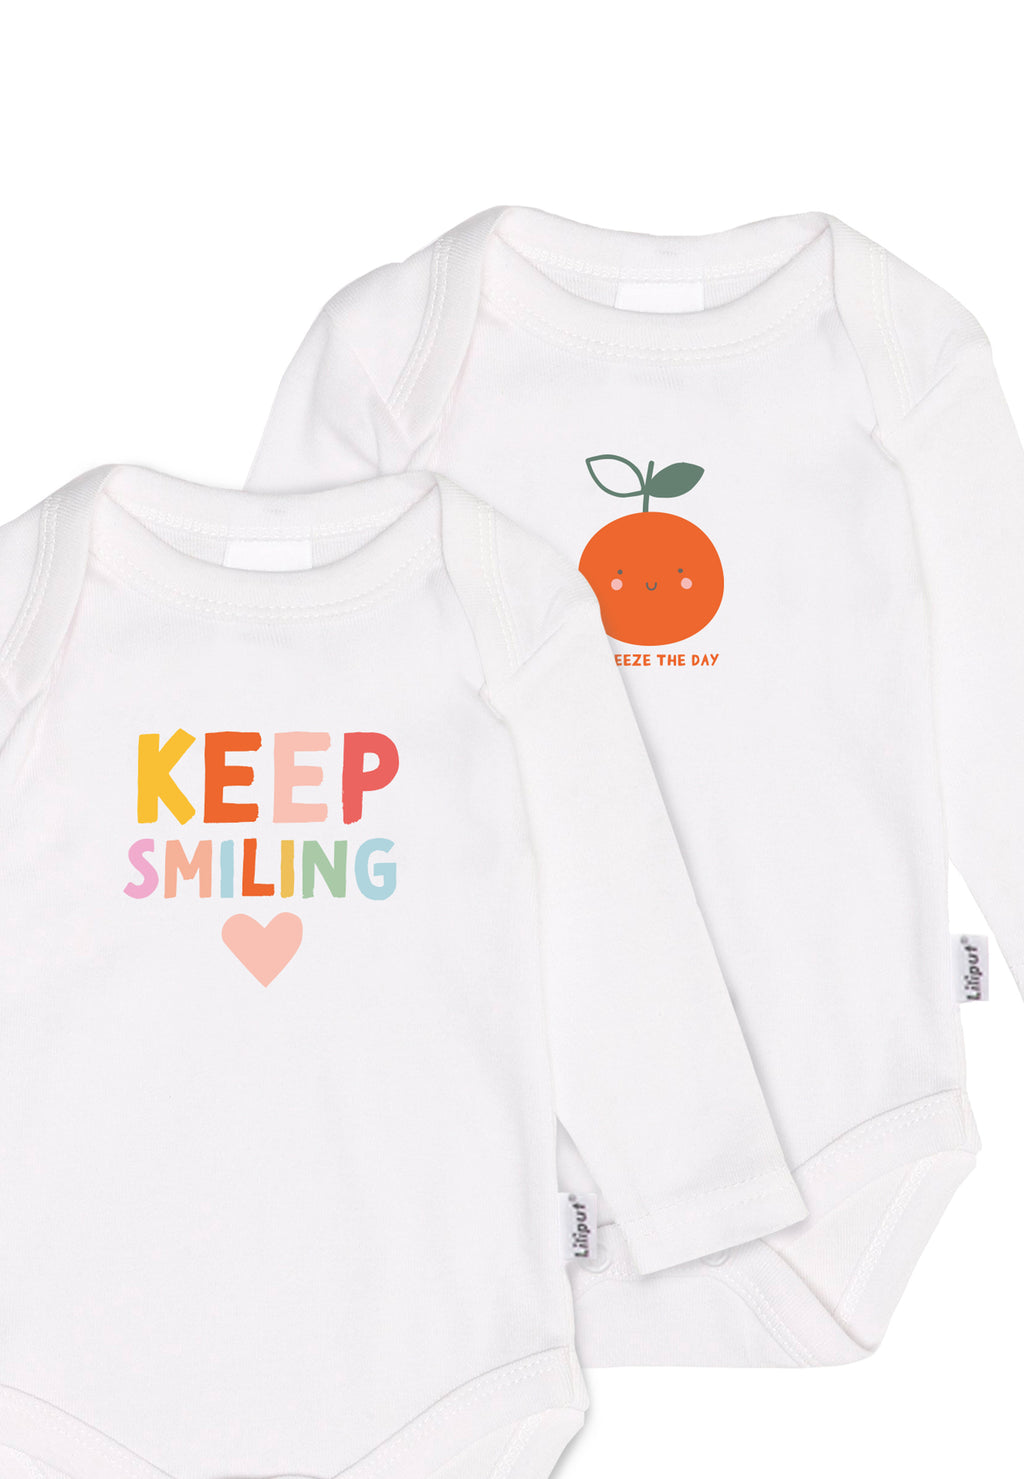 Doppelpack Amineckbodys in weiß mit bunten Aufdrucken "keep smiling" und einer lustigen Orange.